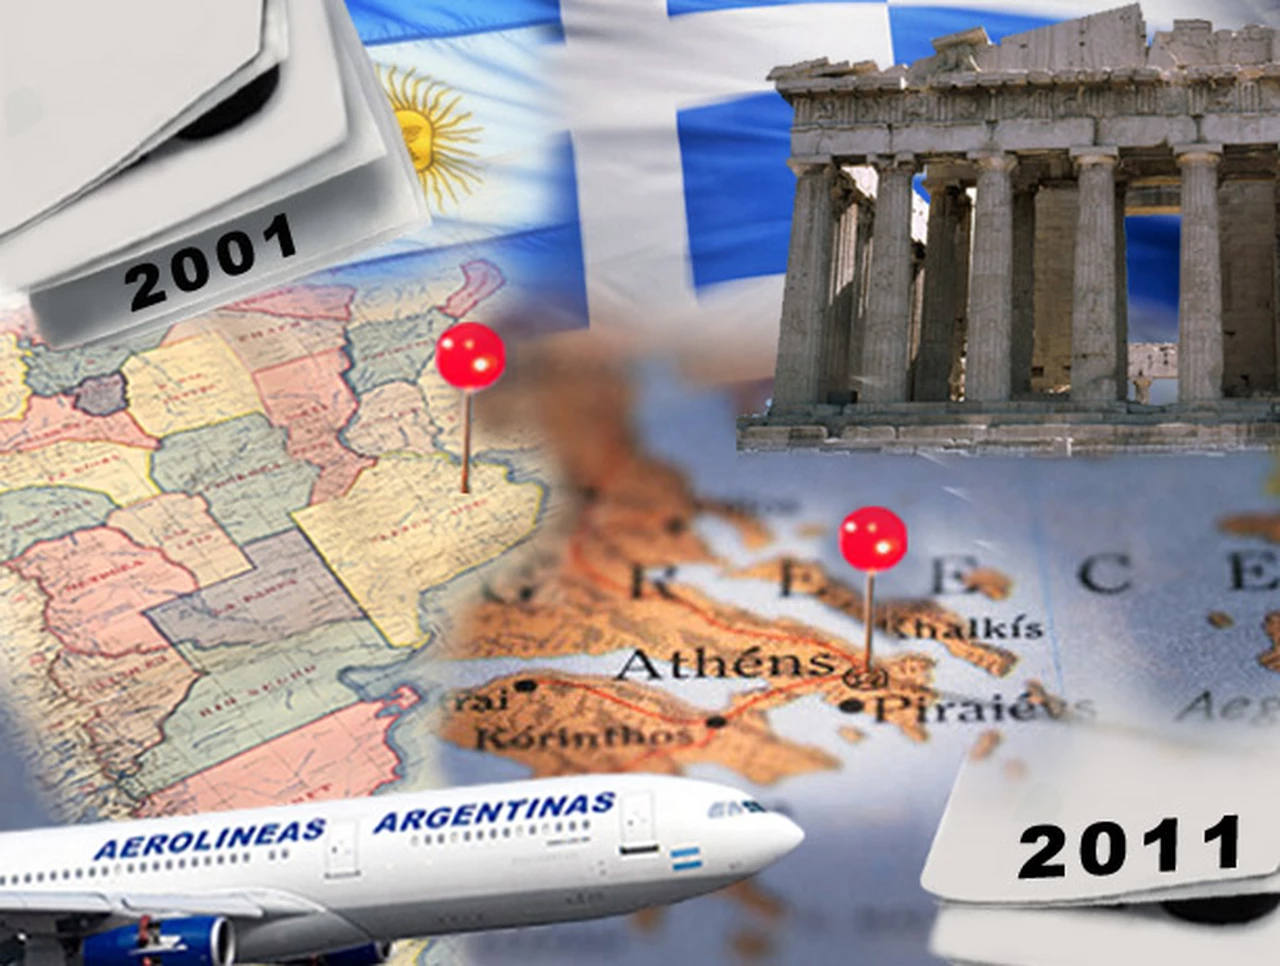 Grecia 2011, Argentina 2001: ¿Por qué el paí­s heleno va "derechito" al abismo?